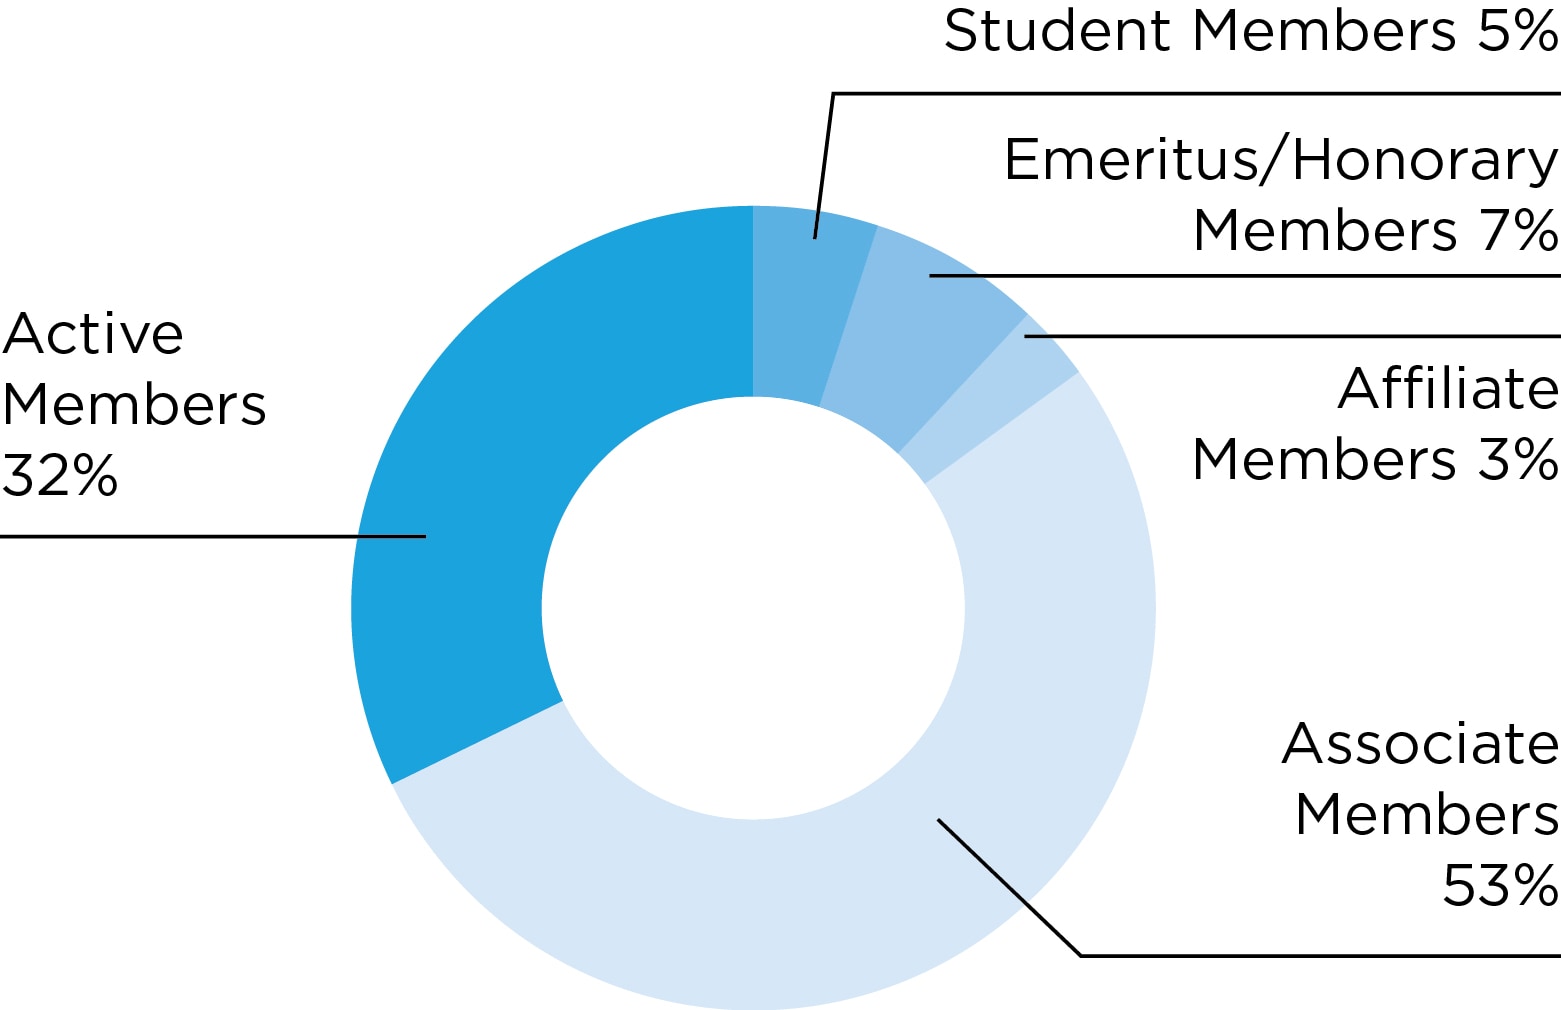 Chart: AACR members by category: Active members, 32 percent; Associate members, 53 percent; Emeritus/Honorary members, 7 percent; Student members, 5 percent; Affiliate members, 3 percent.